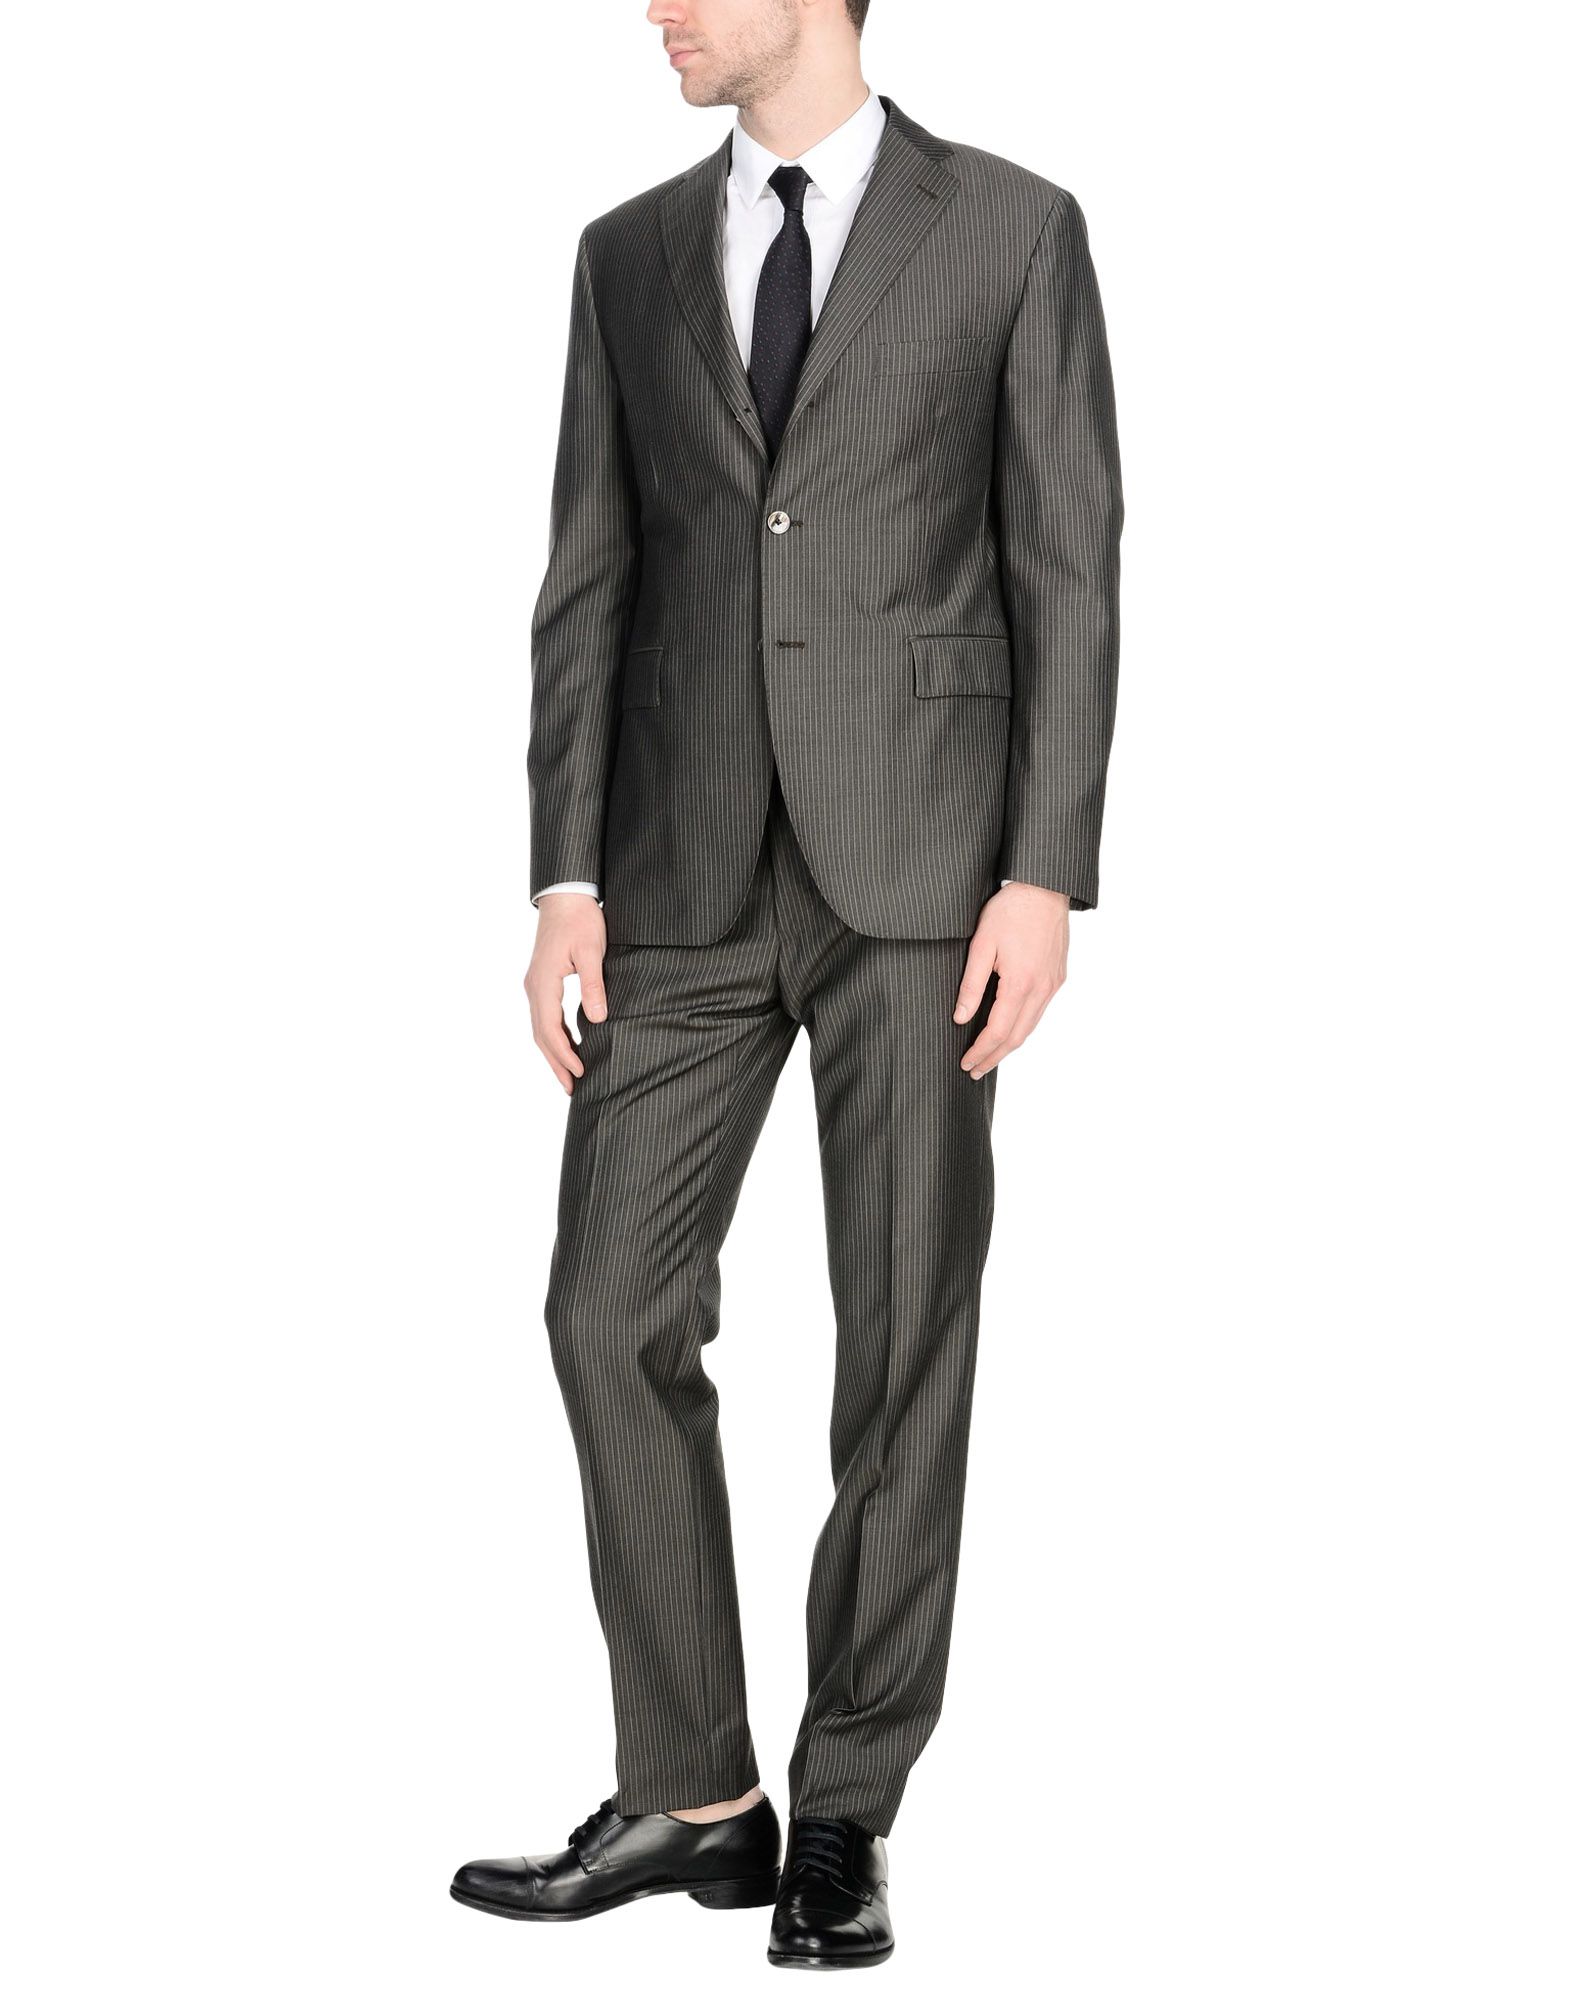 《送料無料》STEFANO SARTORI メンズ スーツ 鉛色 52 スーパー120 ウール 100%